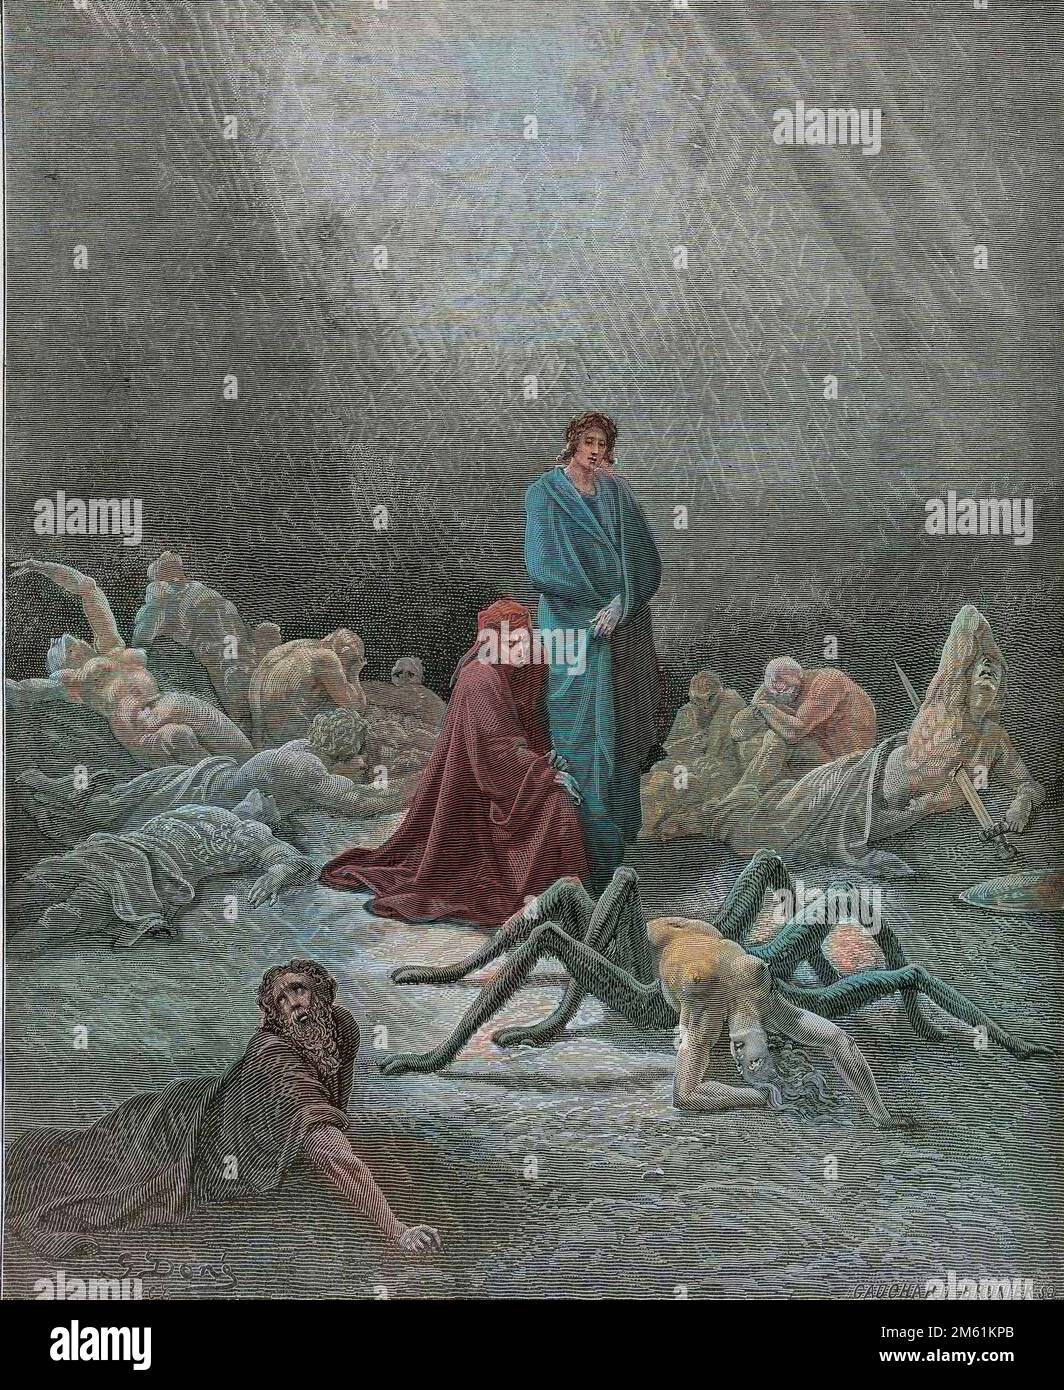 La Divina Commedia di Dante Alighieri , Purgatorio, canto 12 : Dante vede l'anima di Arachne - di Dante Alighieri (1265-1321) - Illustrazione de Gustave Dore (1832-1883), 1885 - Colorizzazione digitale d'apres l'originale Foto Stock